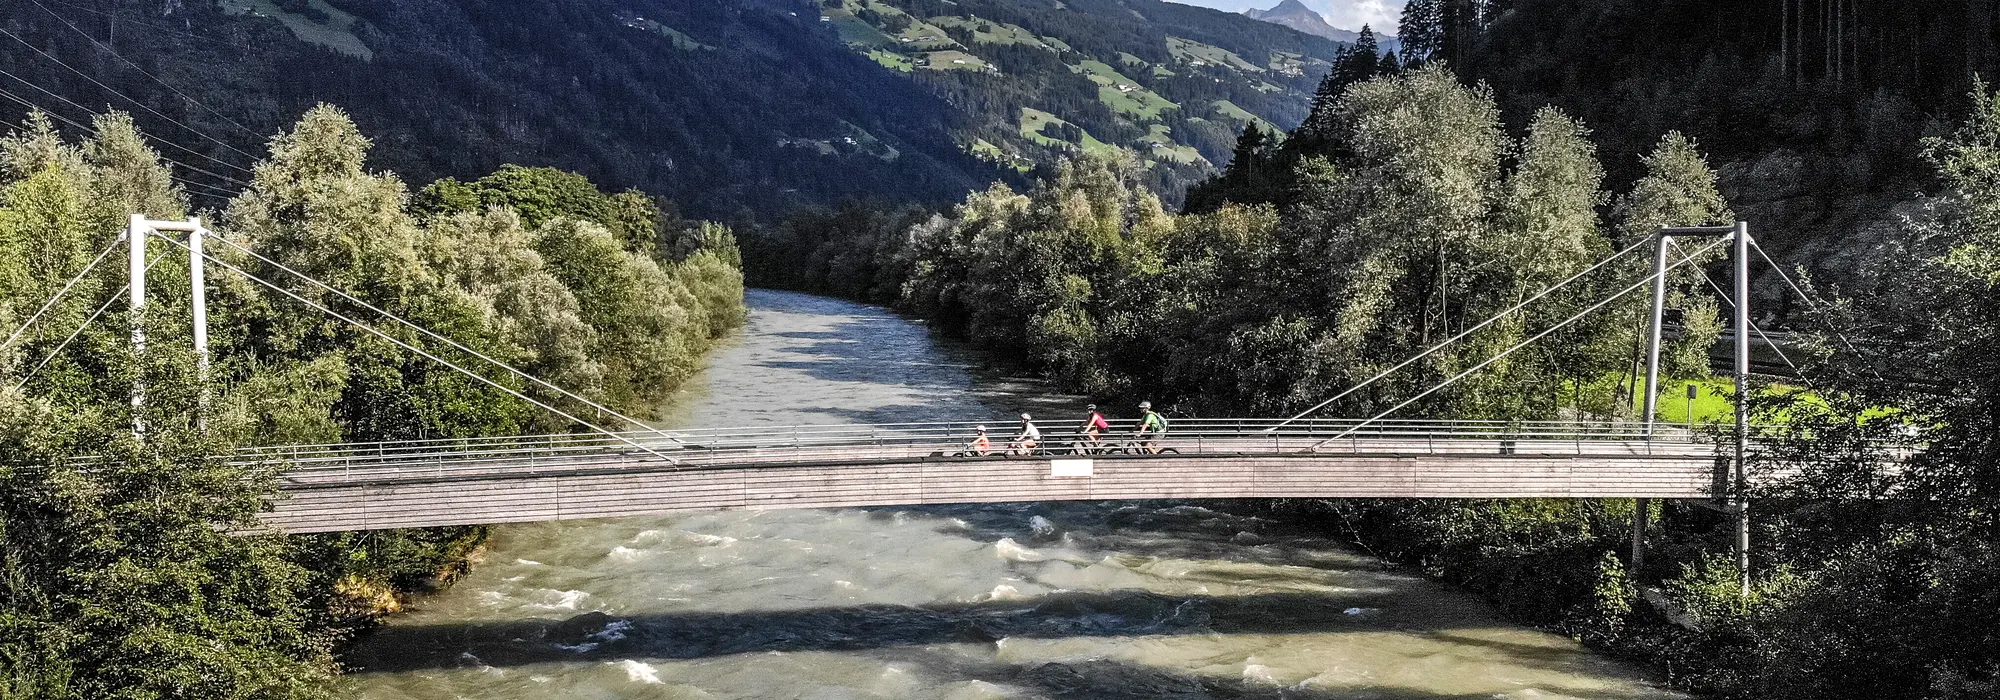 Radfahren | © Erste Ferienregion im Zillertal / Andi Frank